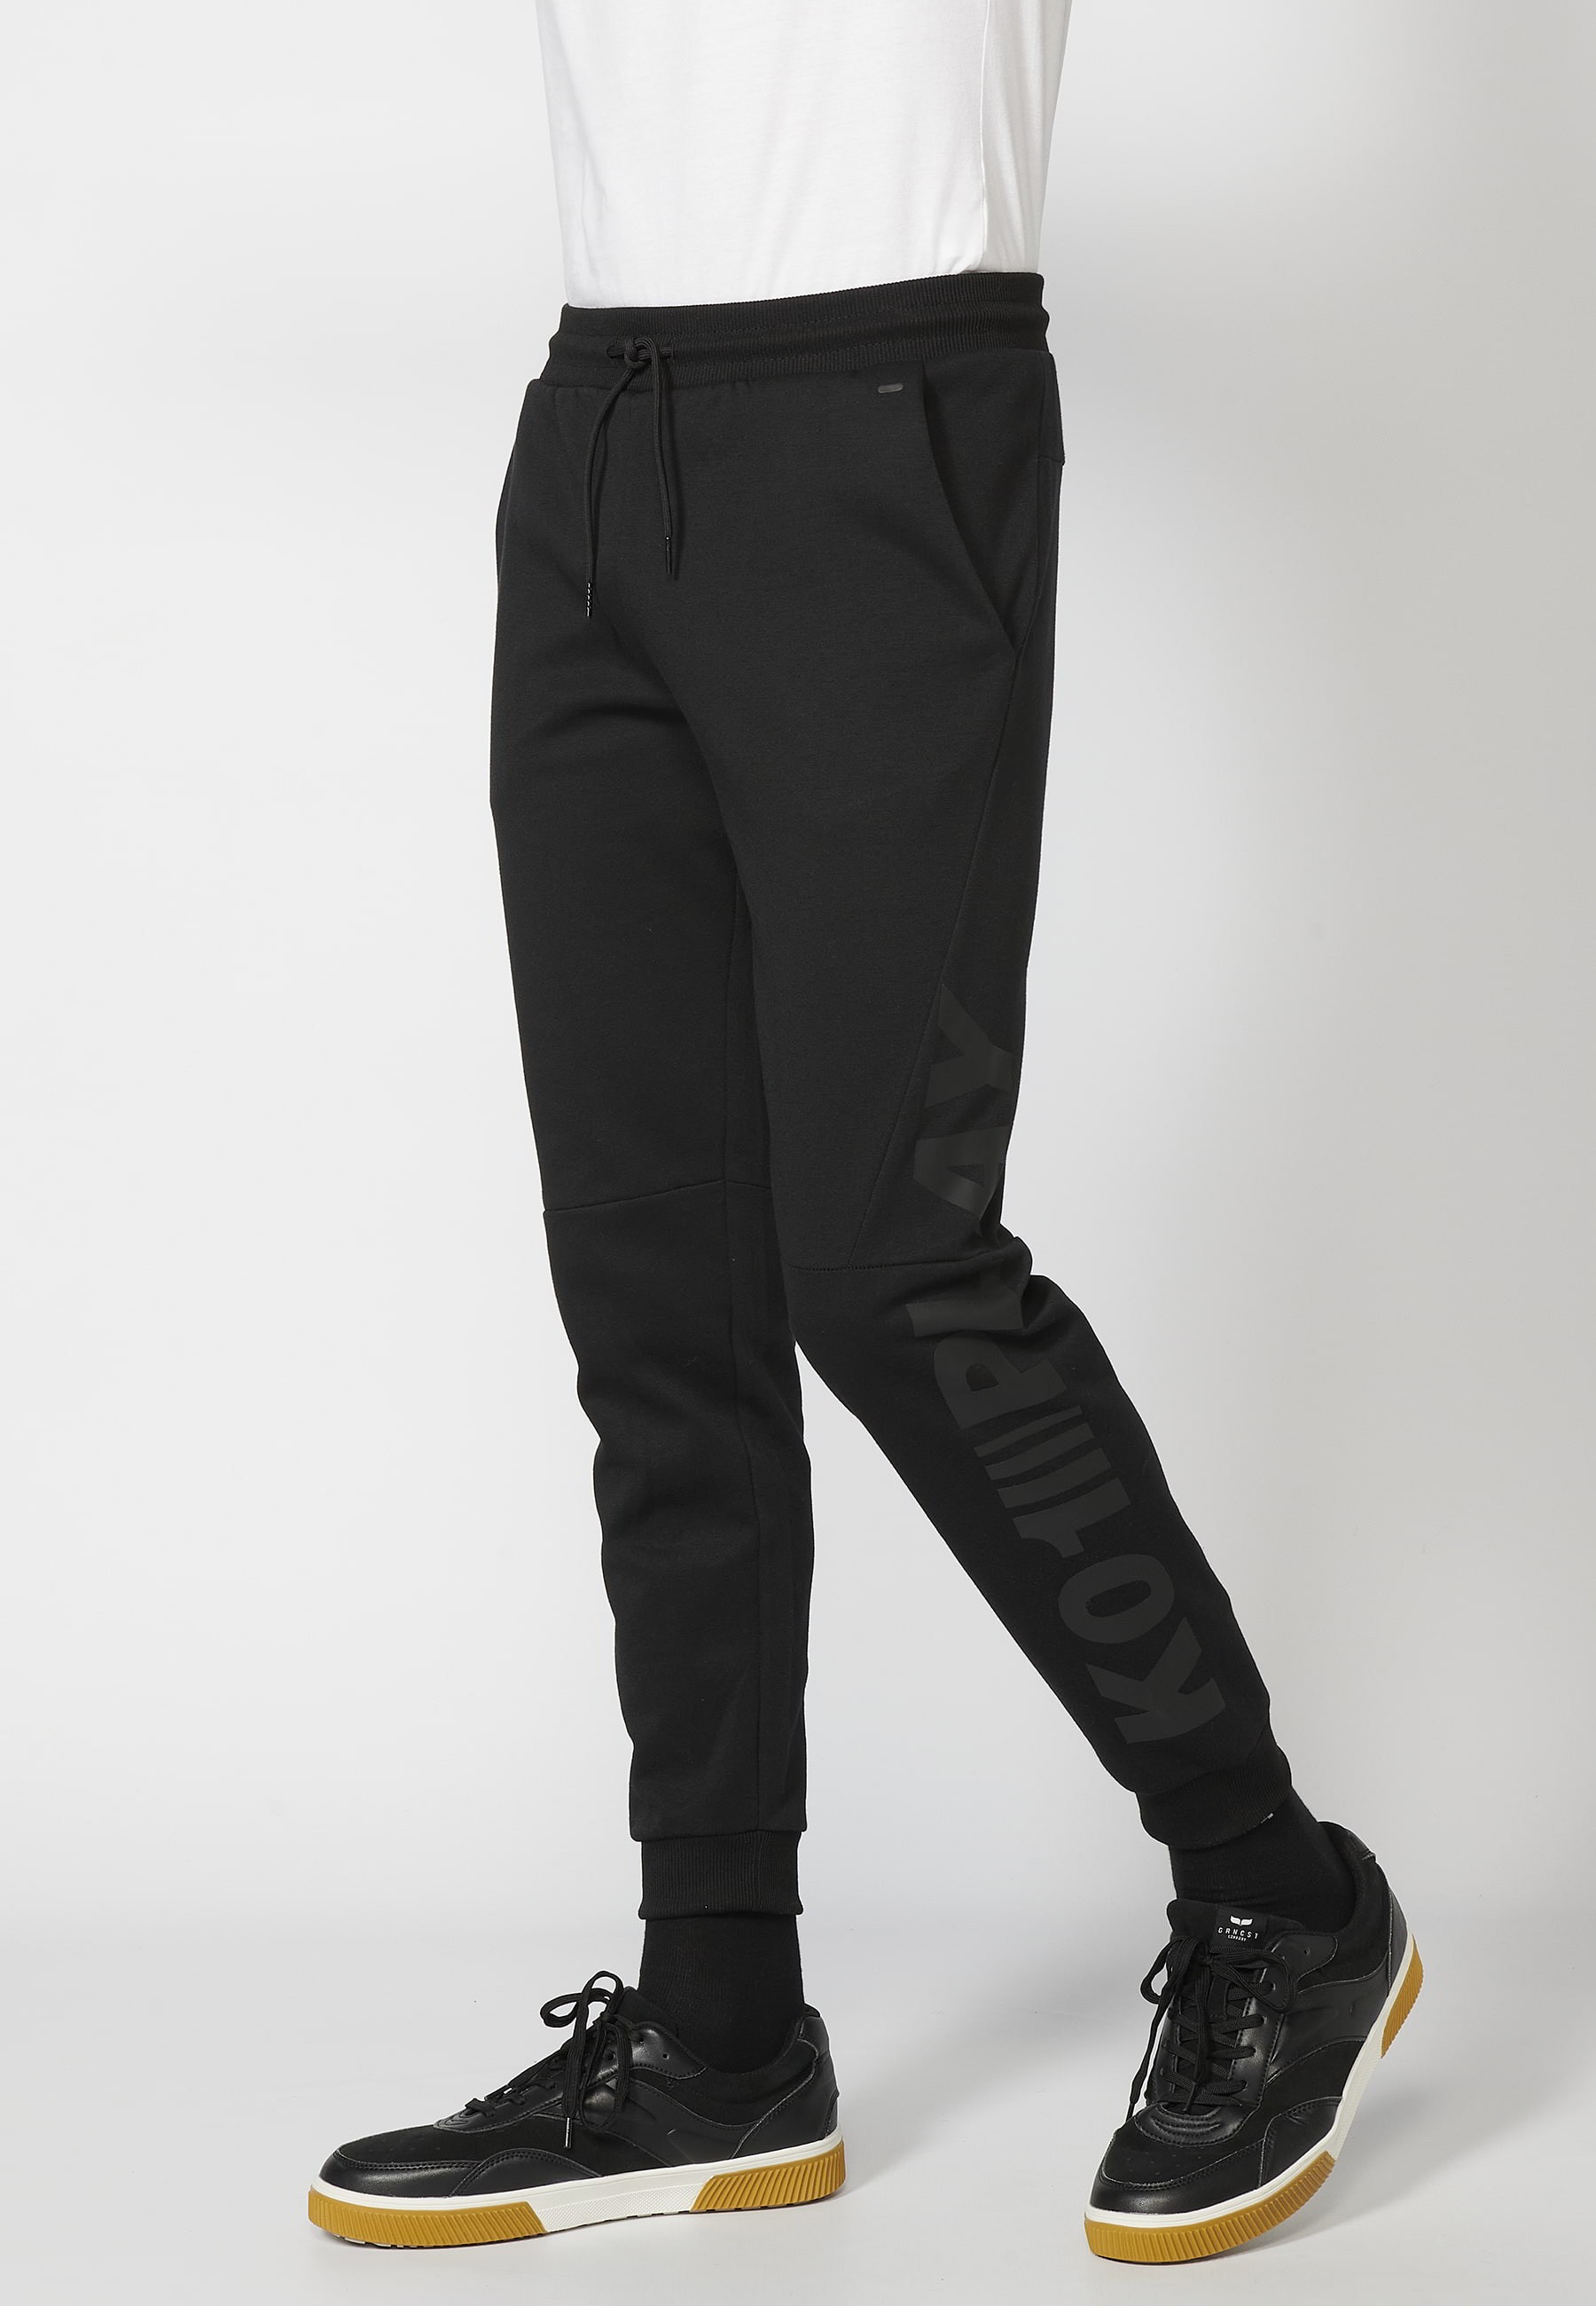 Long jogger pants with adjustable elastic waist, pocket detail, Black color for Men